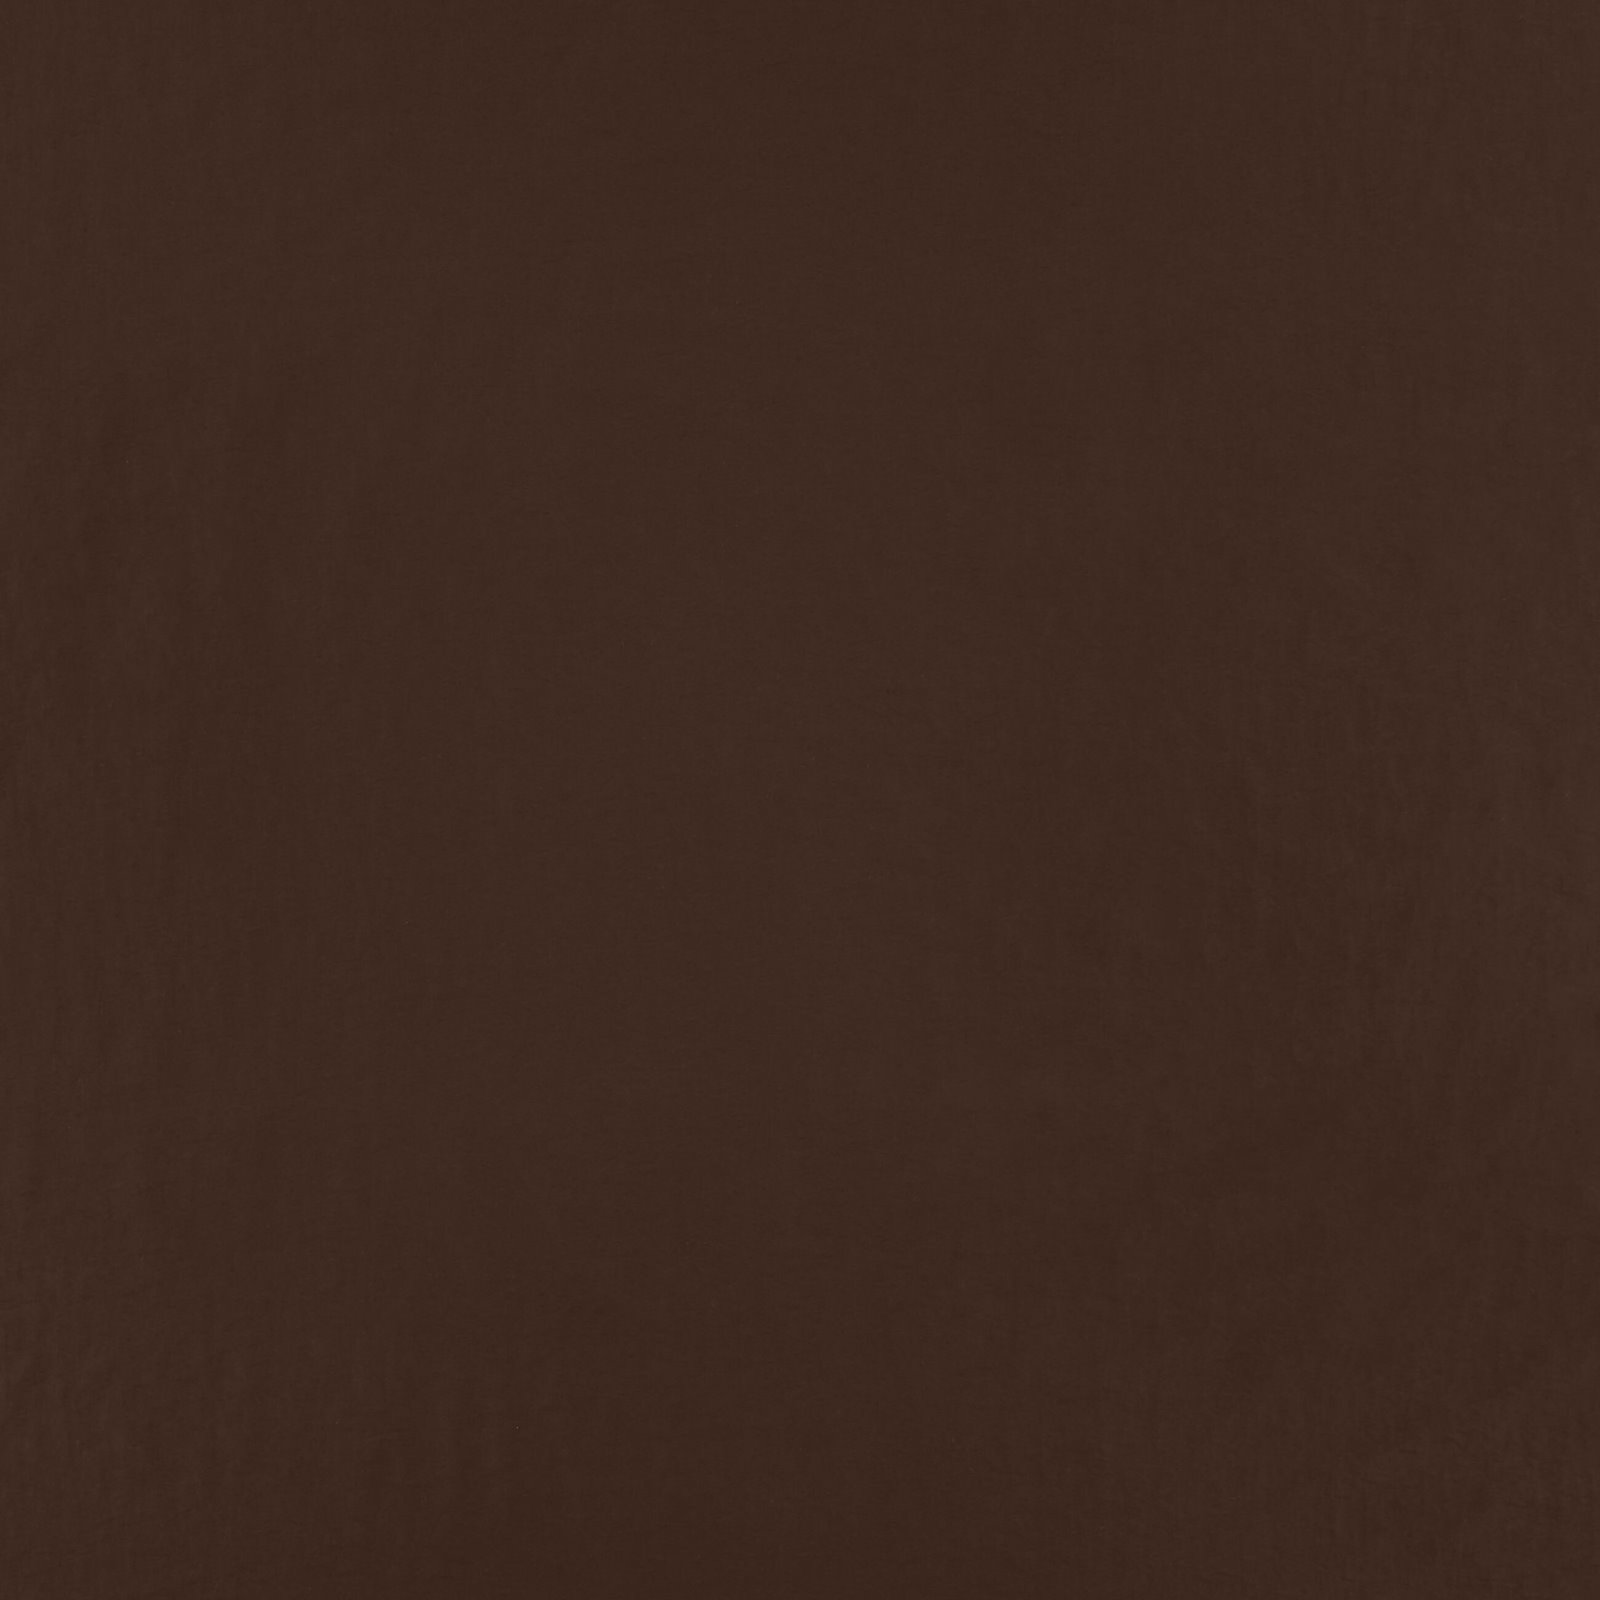 Vævet taslan med struktur mørk brun 560278_pack_solid